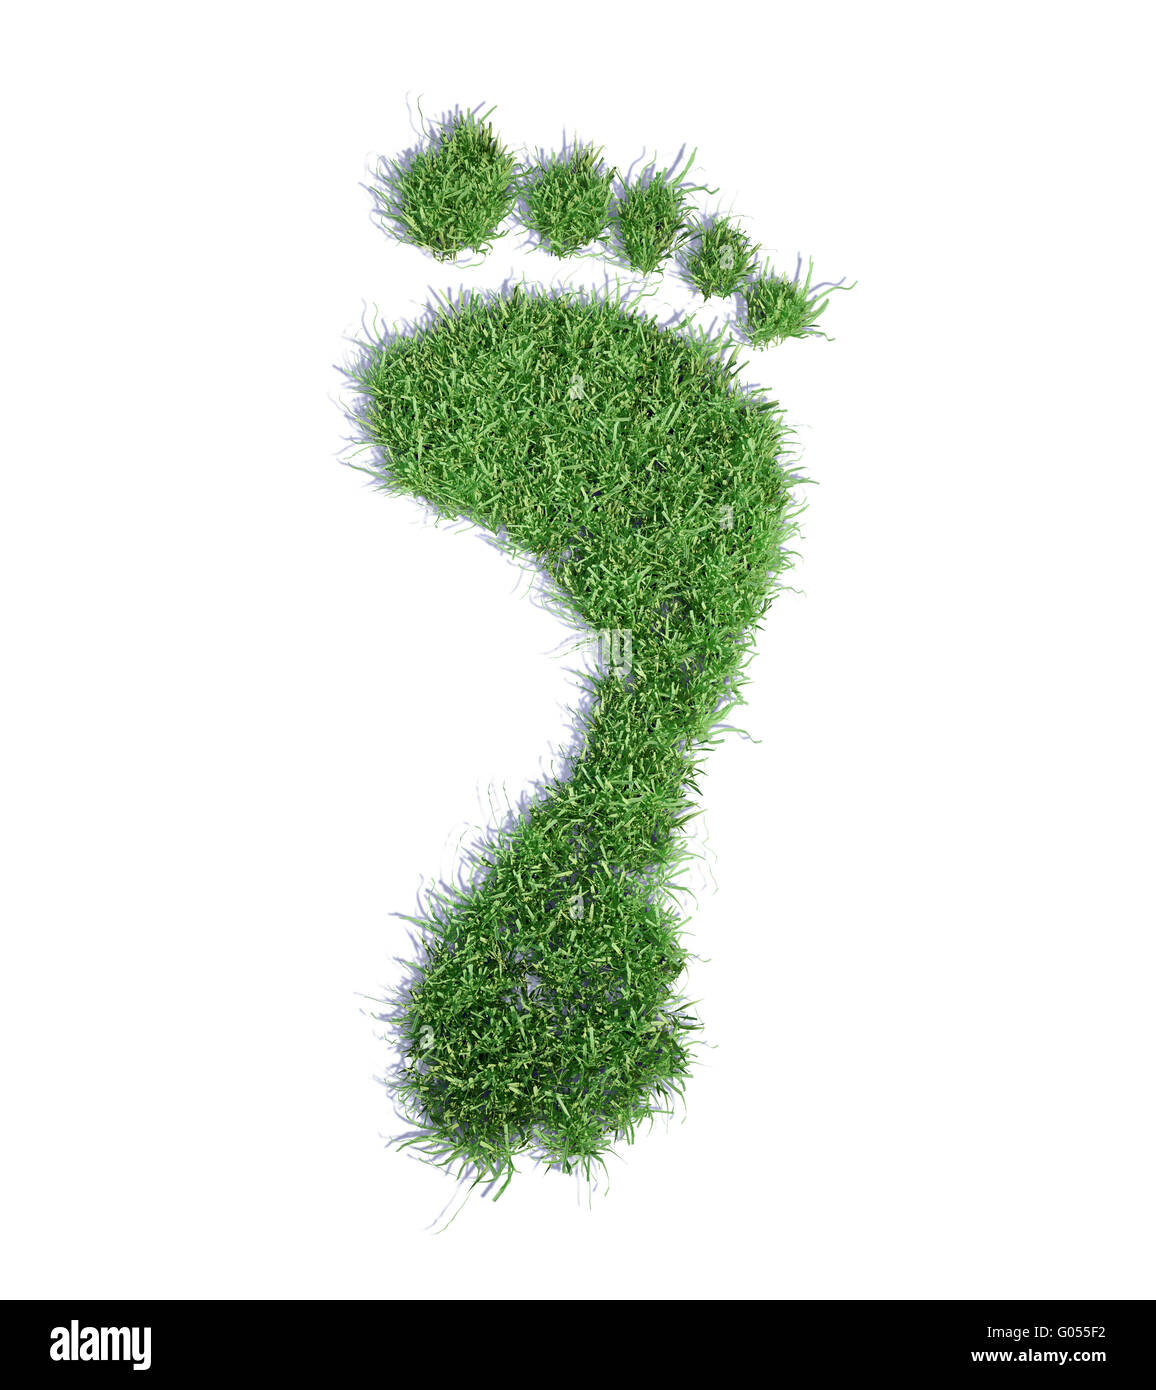 Ökologischen Fußabdruck Konzept Illustration - Grass Patch Fußabdruck Stockfoto